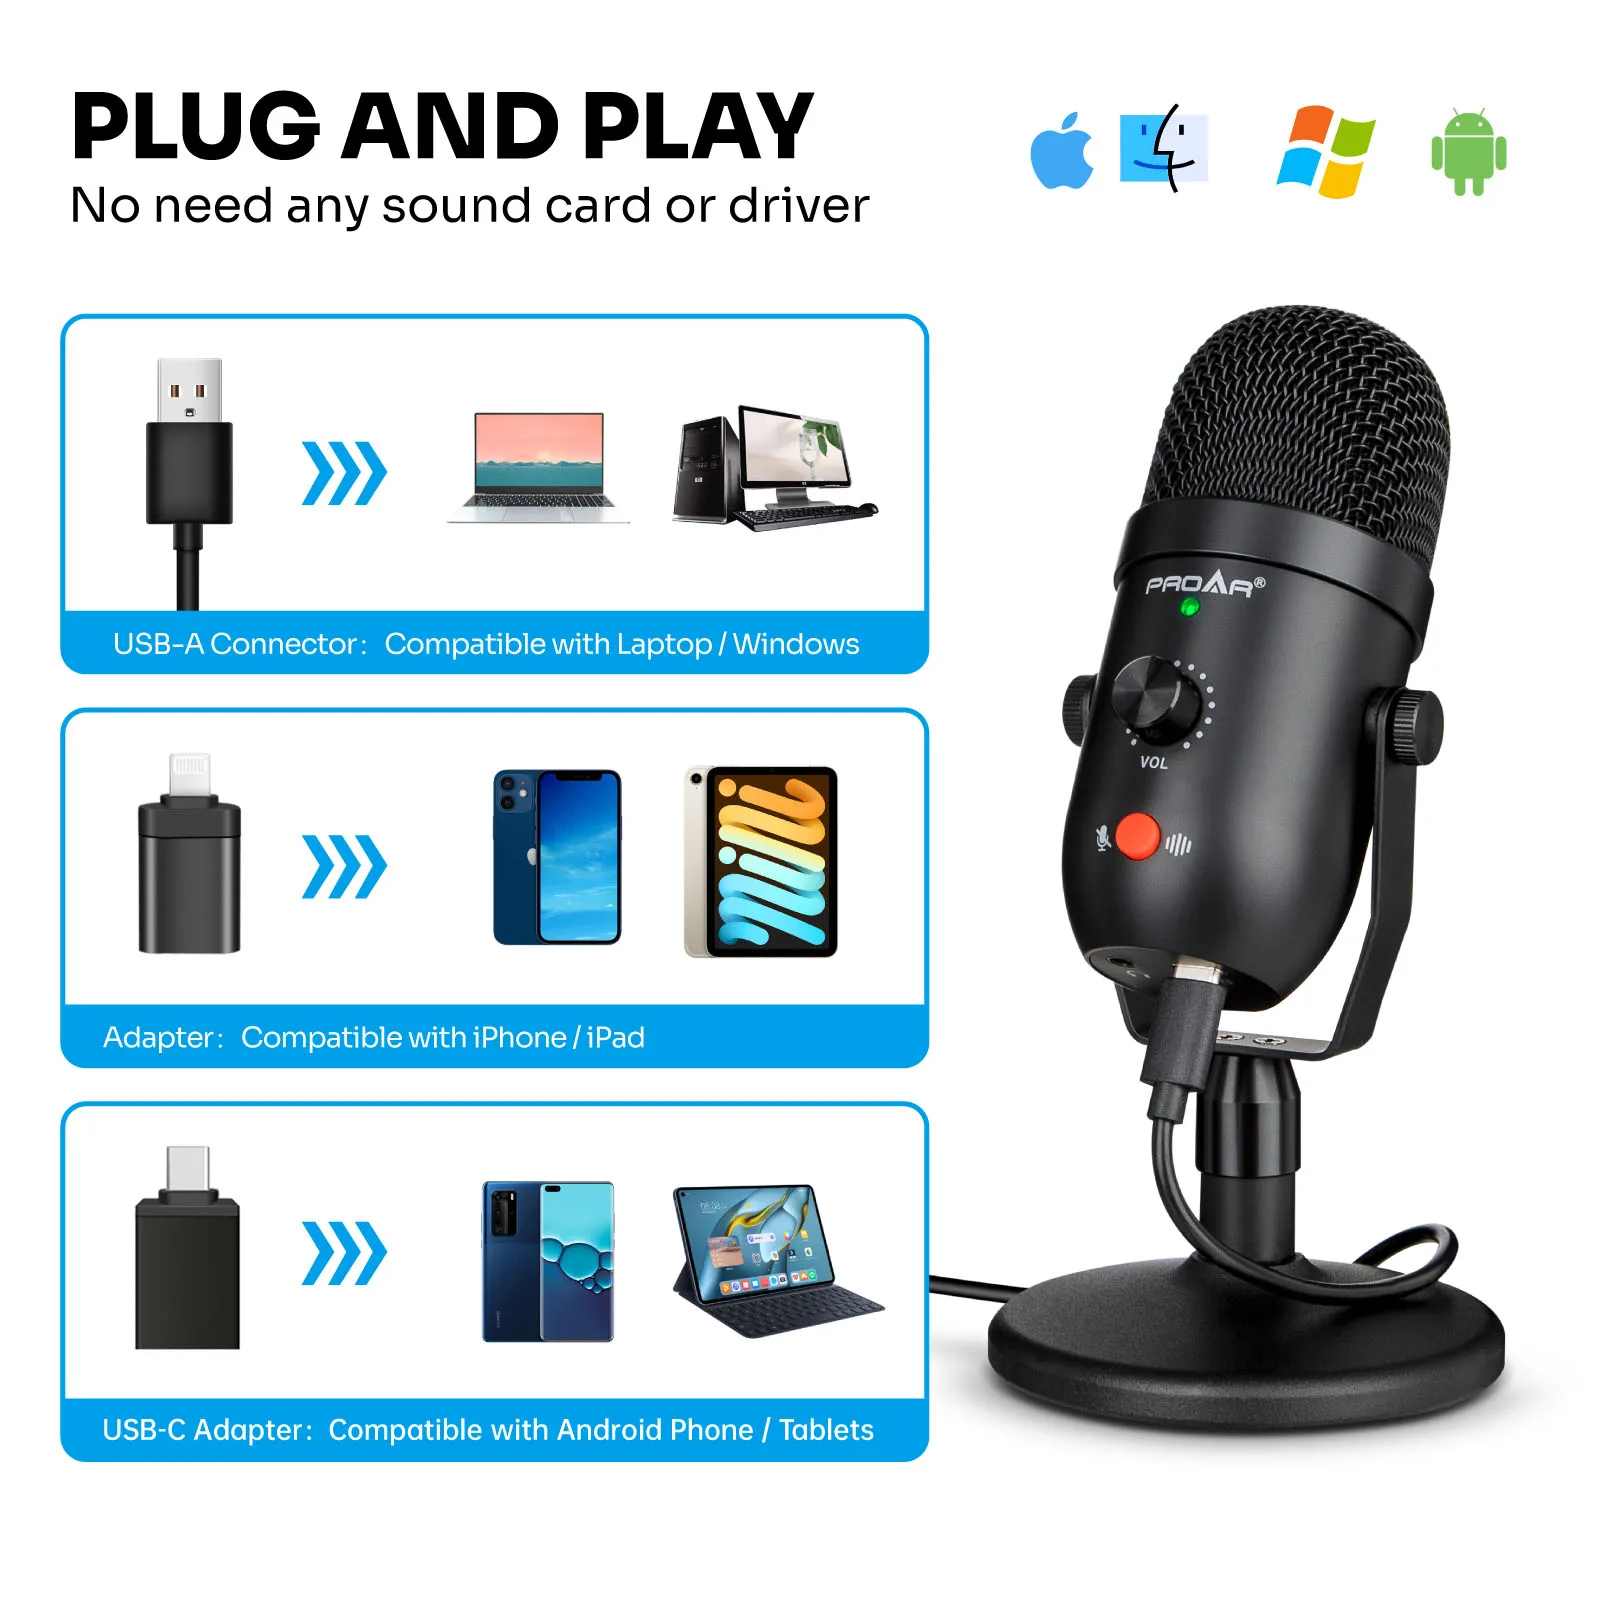 Micrófono para podcast, kit de micrófono USB para teléfono,  PC/Micro/Mac/Android, micrófono profesional de estudio Plug & Play con  soporte para